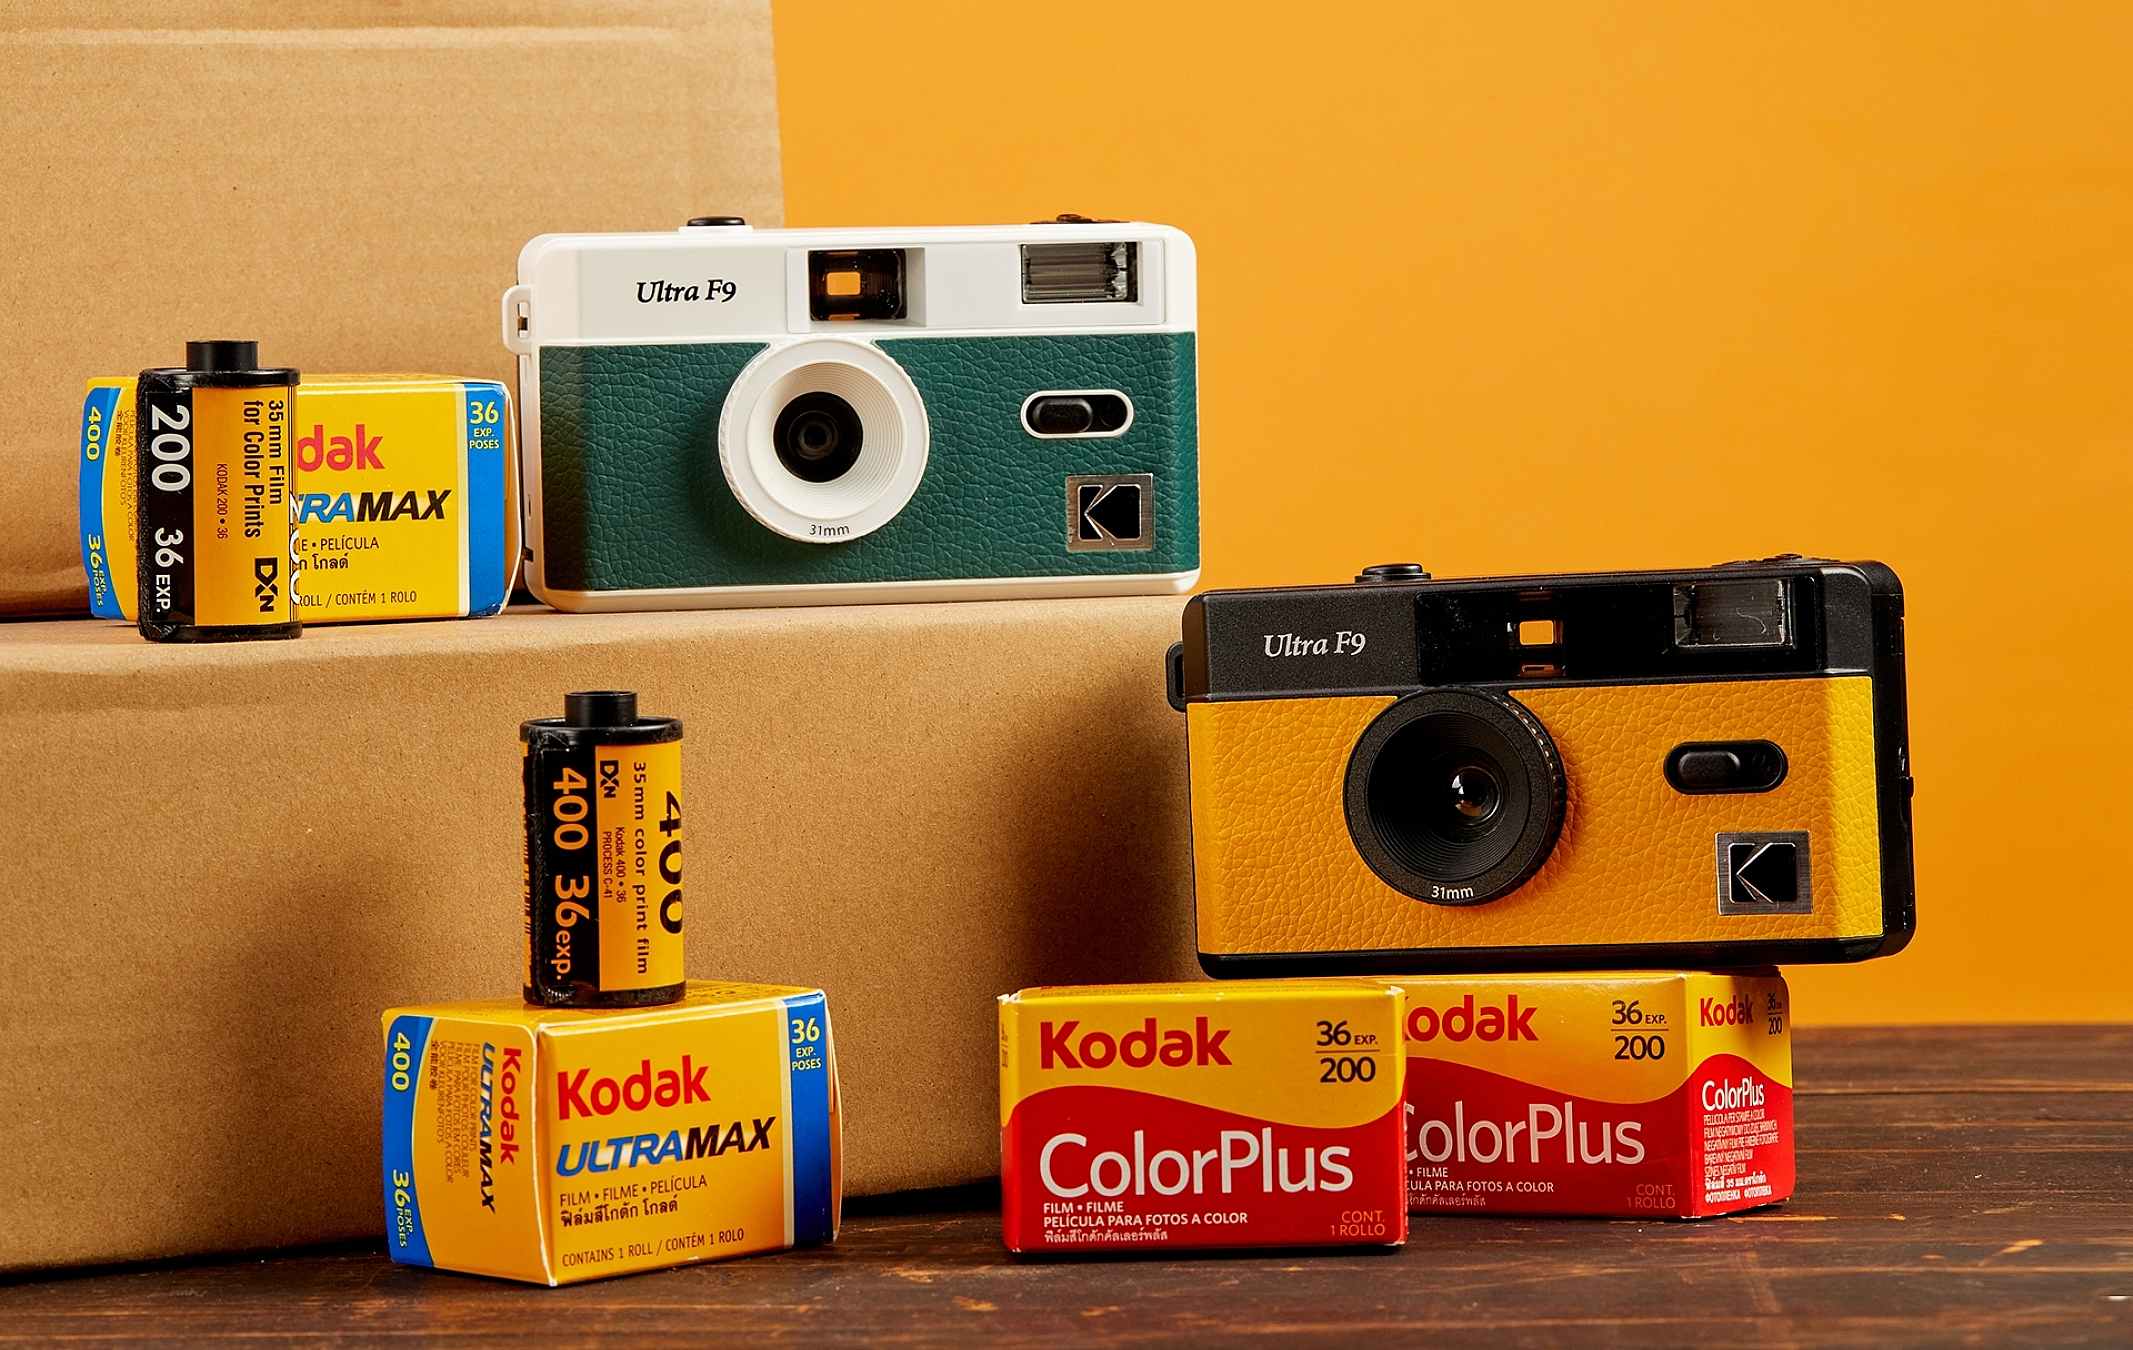 ¿Qué opinan de que ciertas cosas queden obsoletas? KODAK-Film-Camera-ULTRA-F9-Green-and-Yellow-on-box-among-film-packages